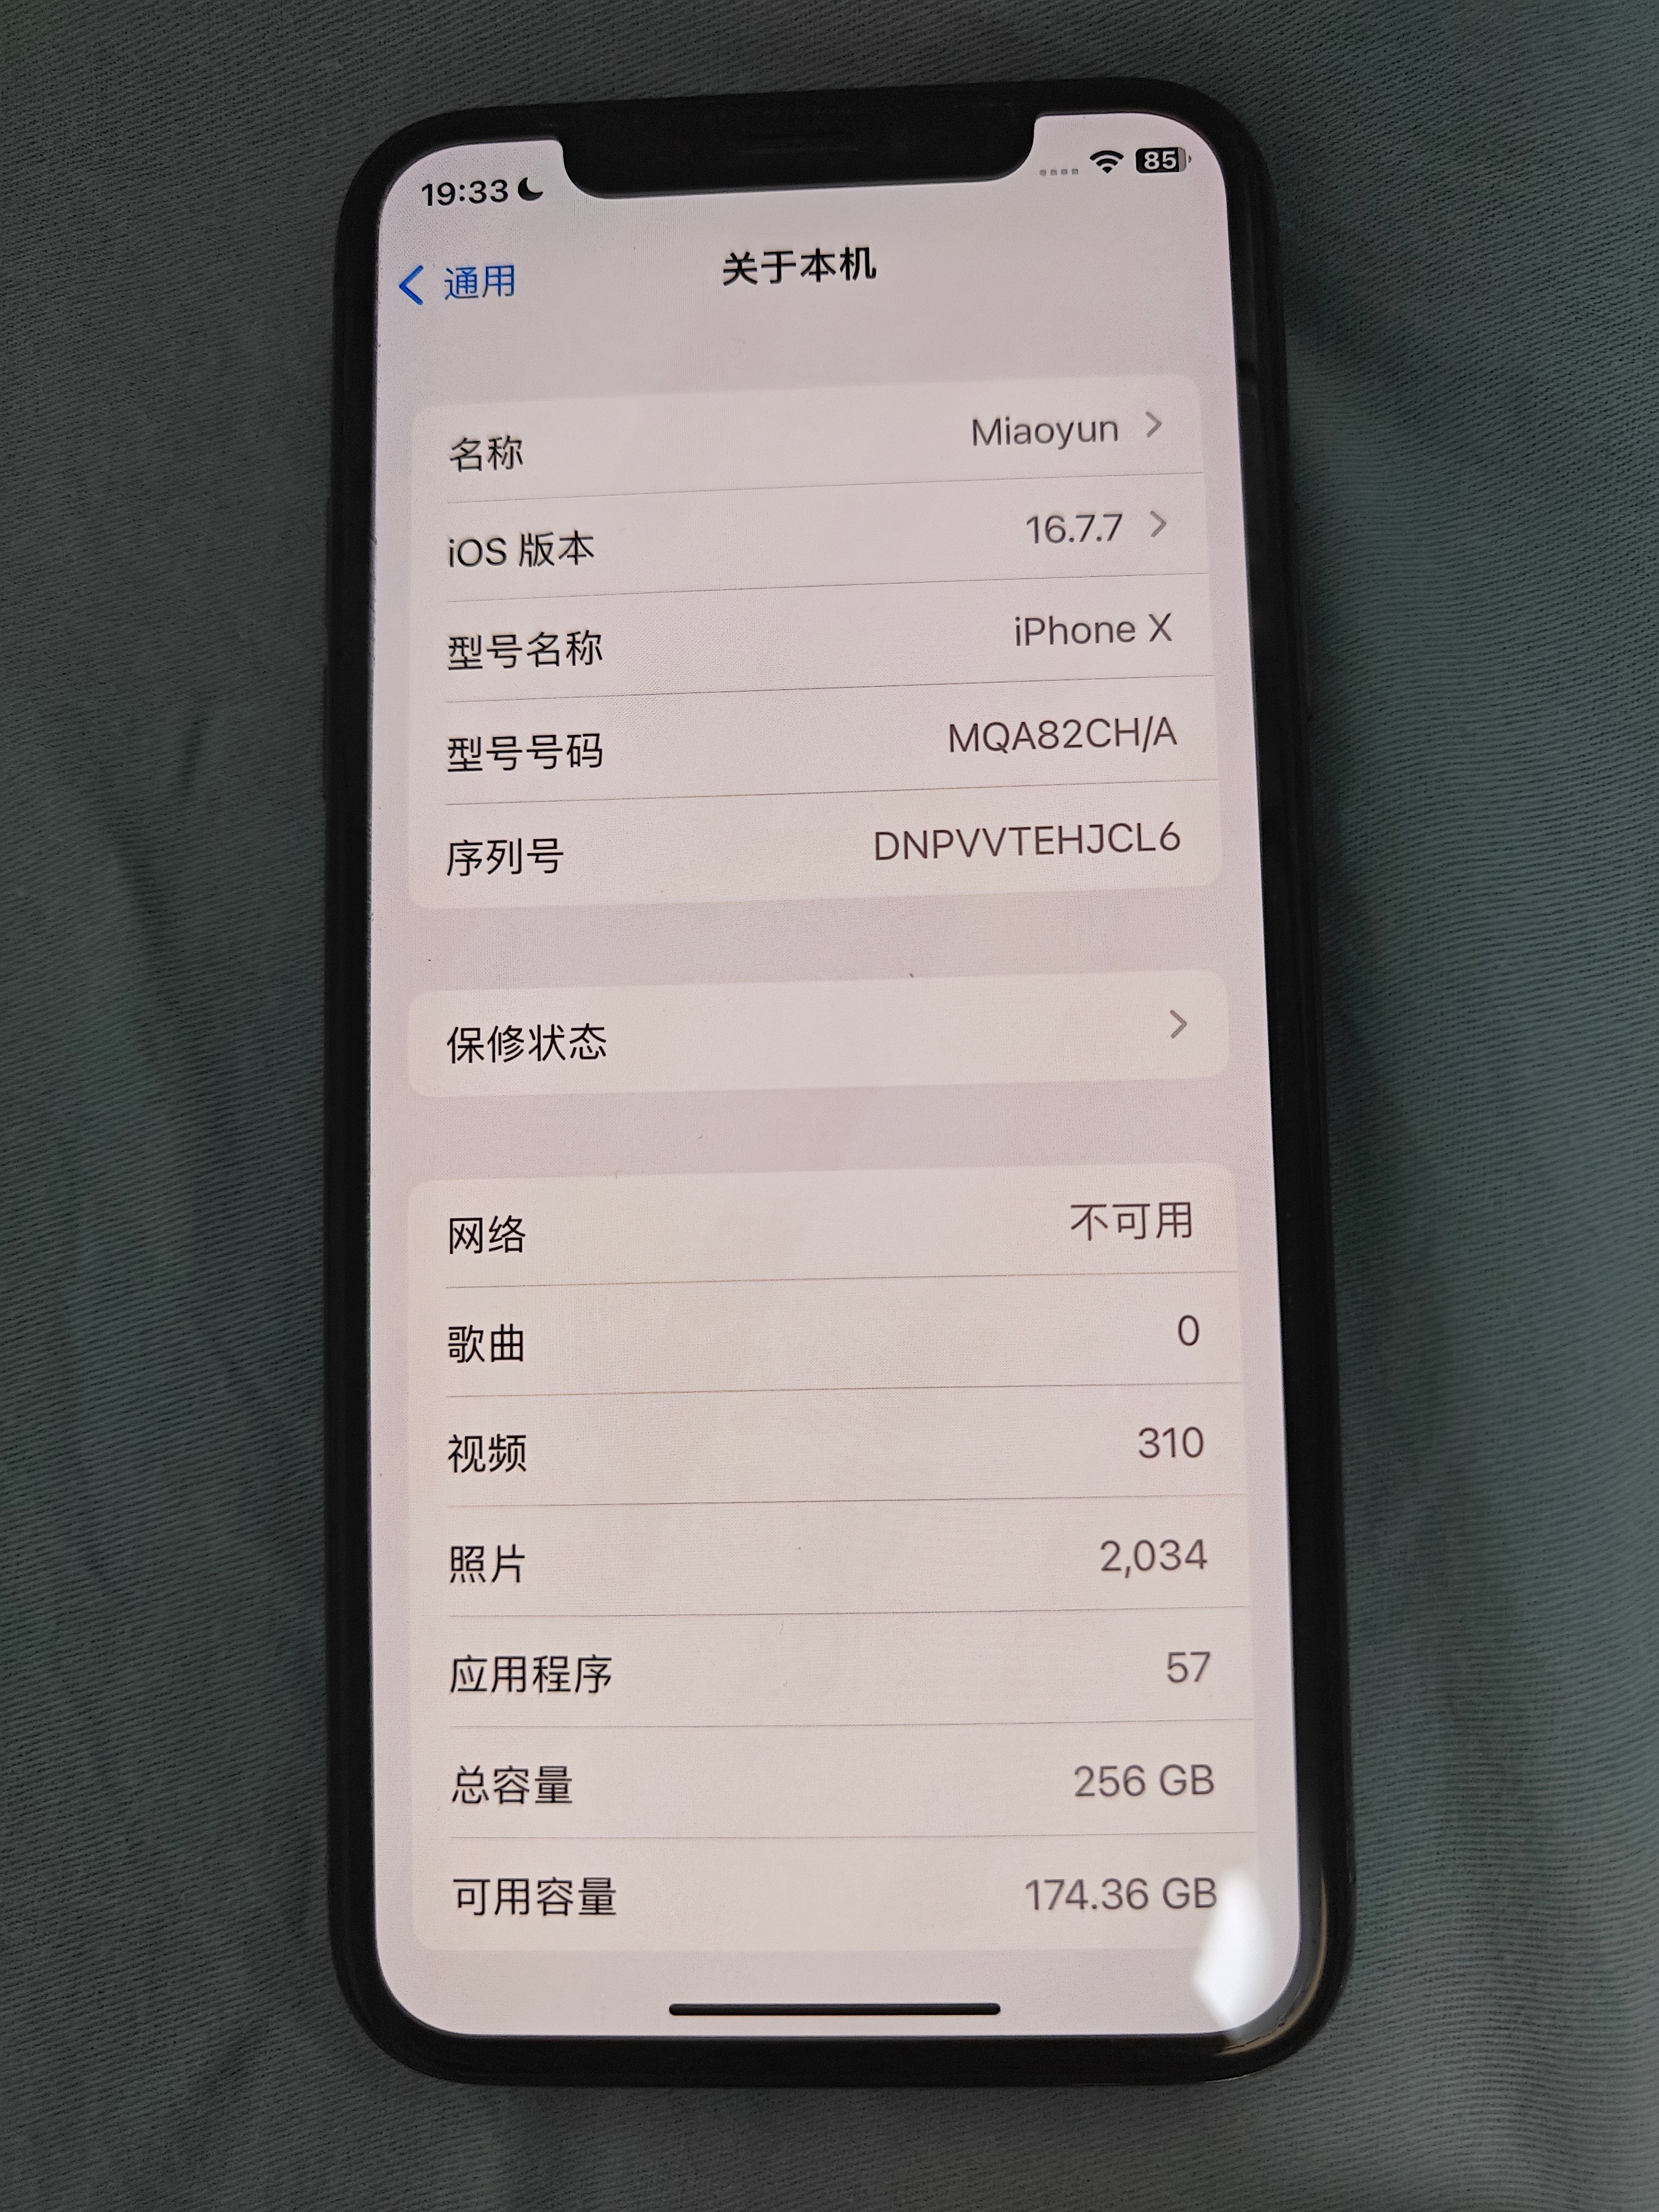 出国行苹果X 256G黑色 原装除了换过电池 850块钱有要的么 be,961,2086,256,fa